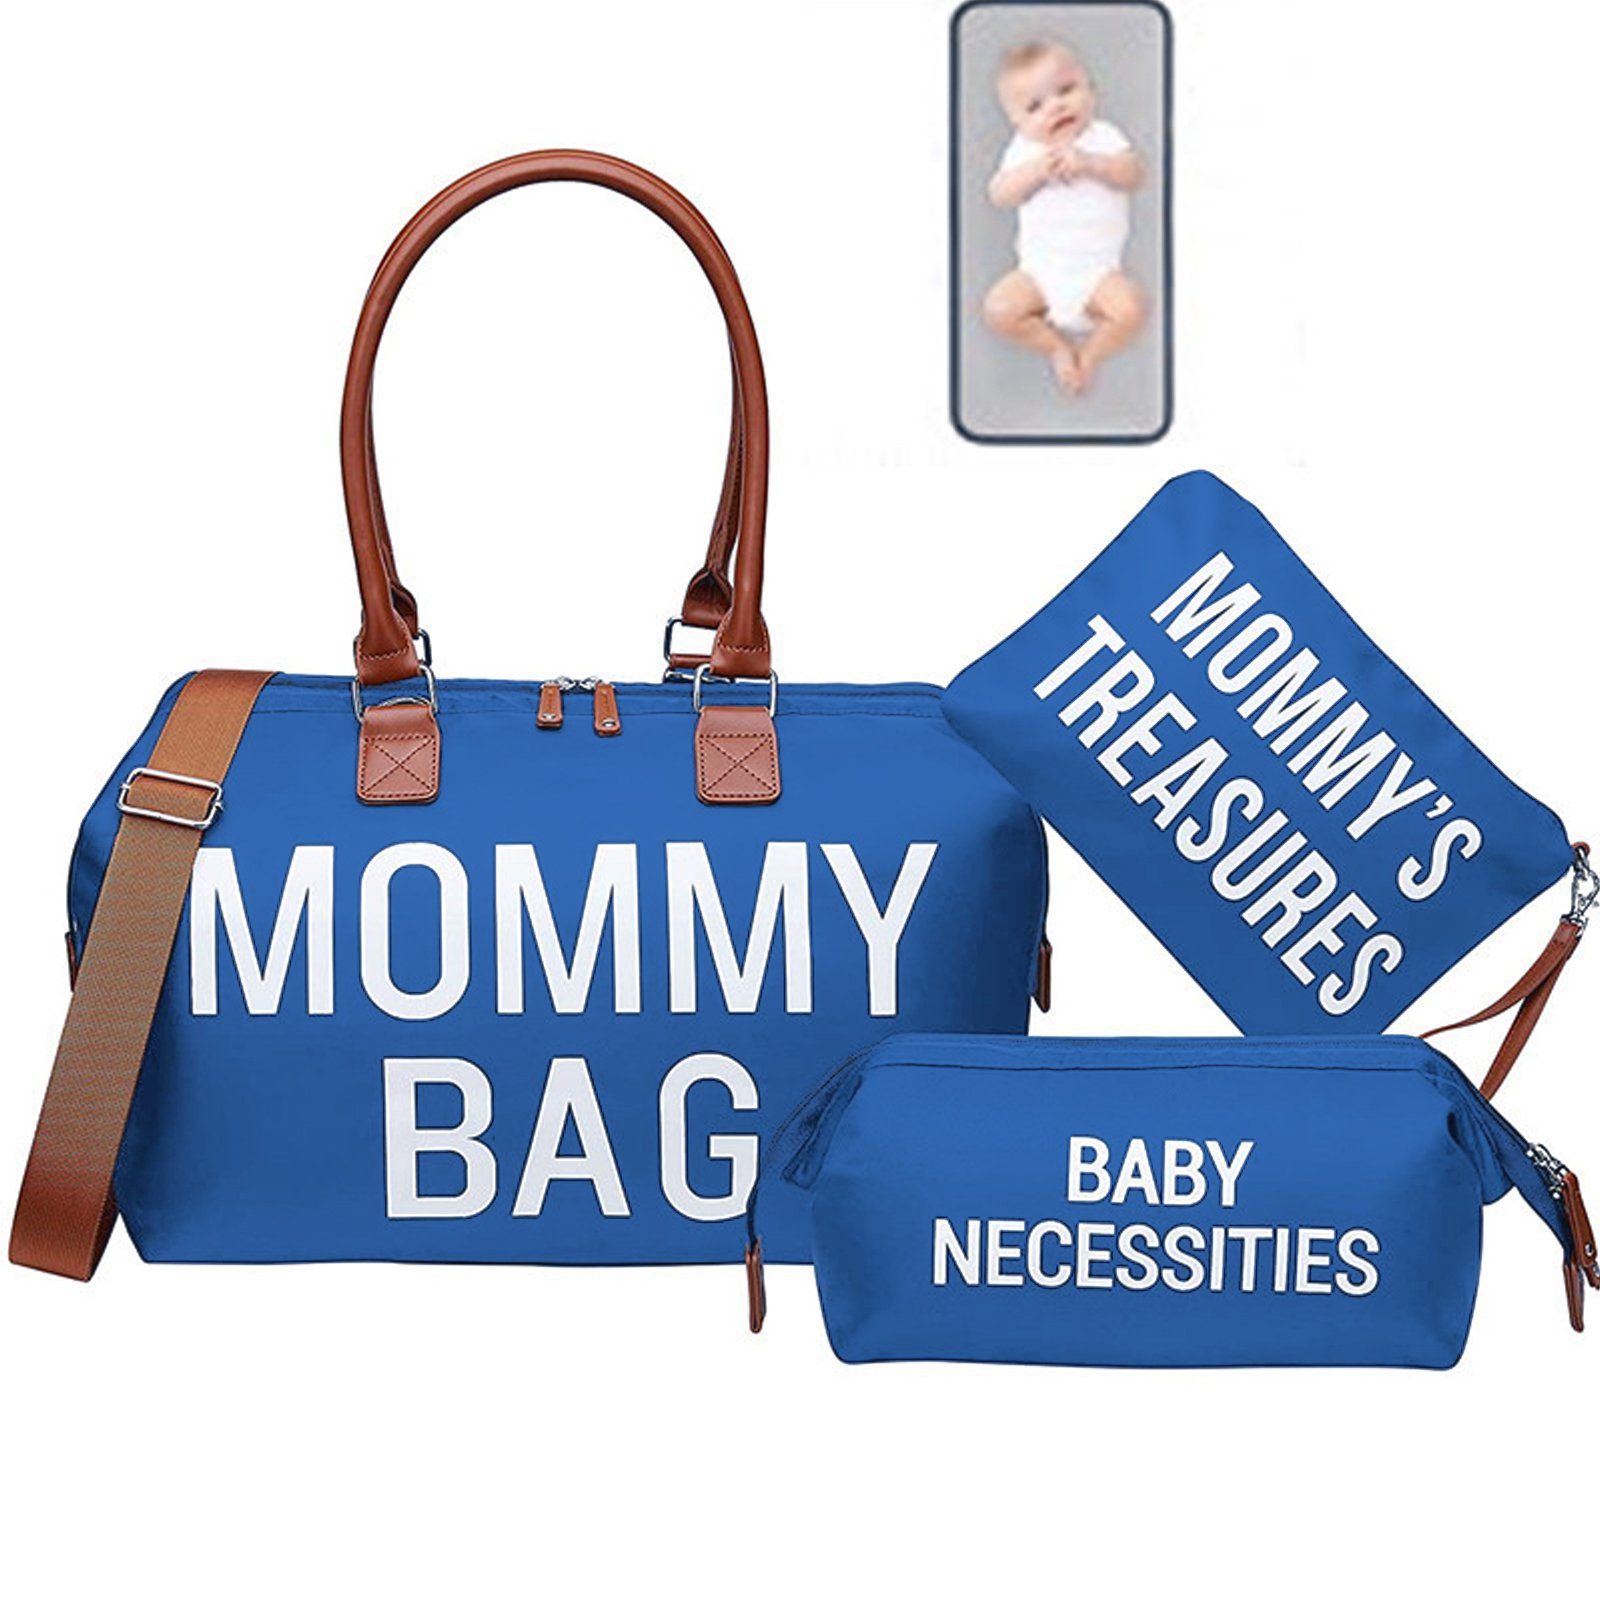 Mom Bag, Großer Shopper, Strandtasche, Khaki